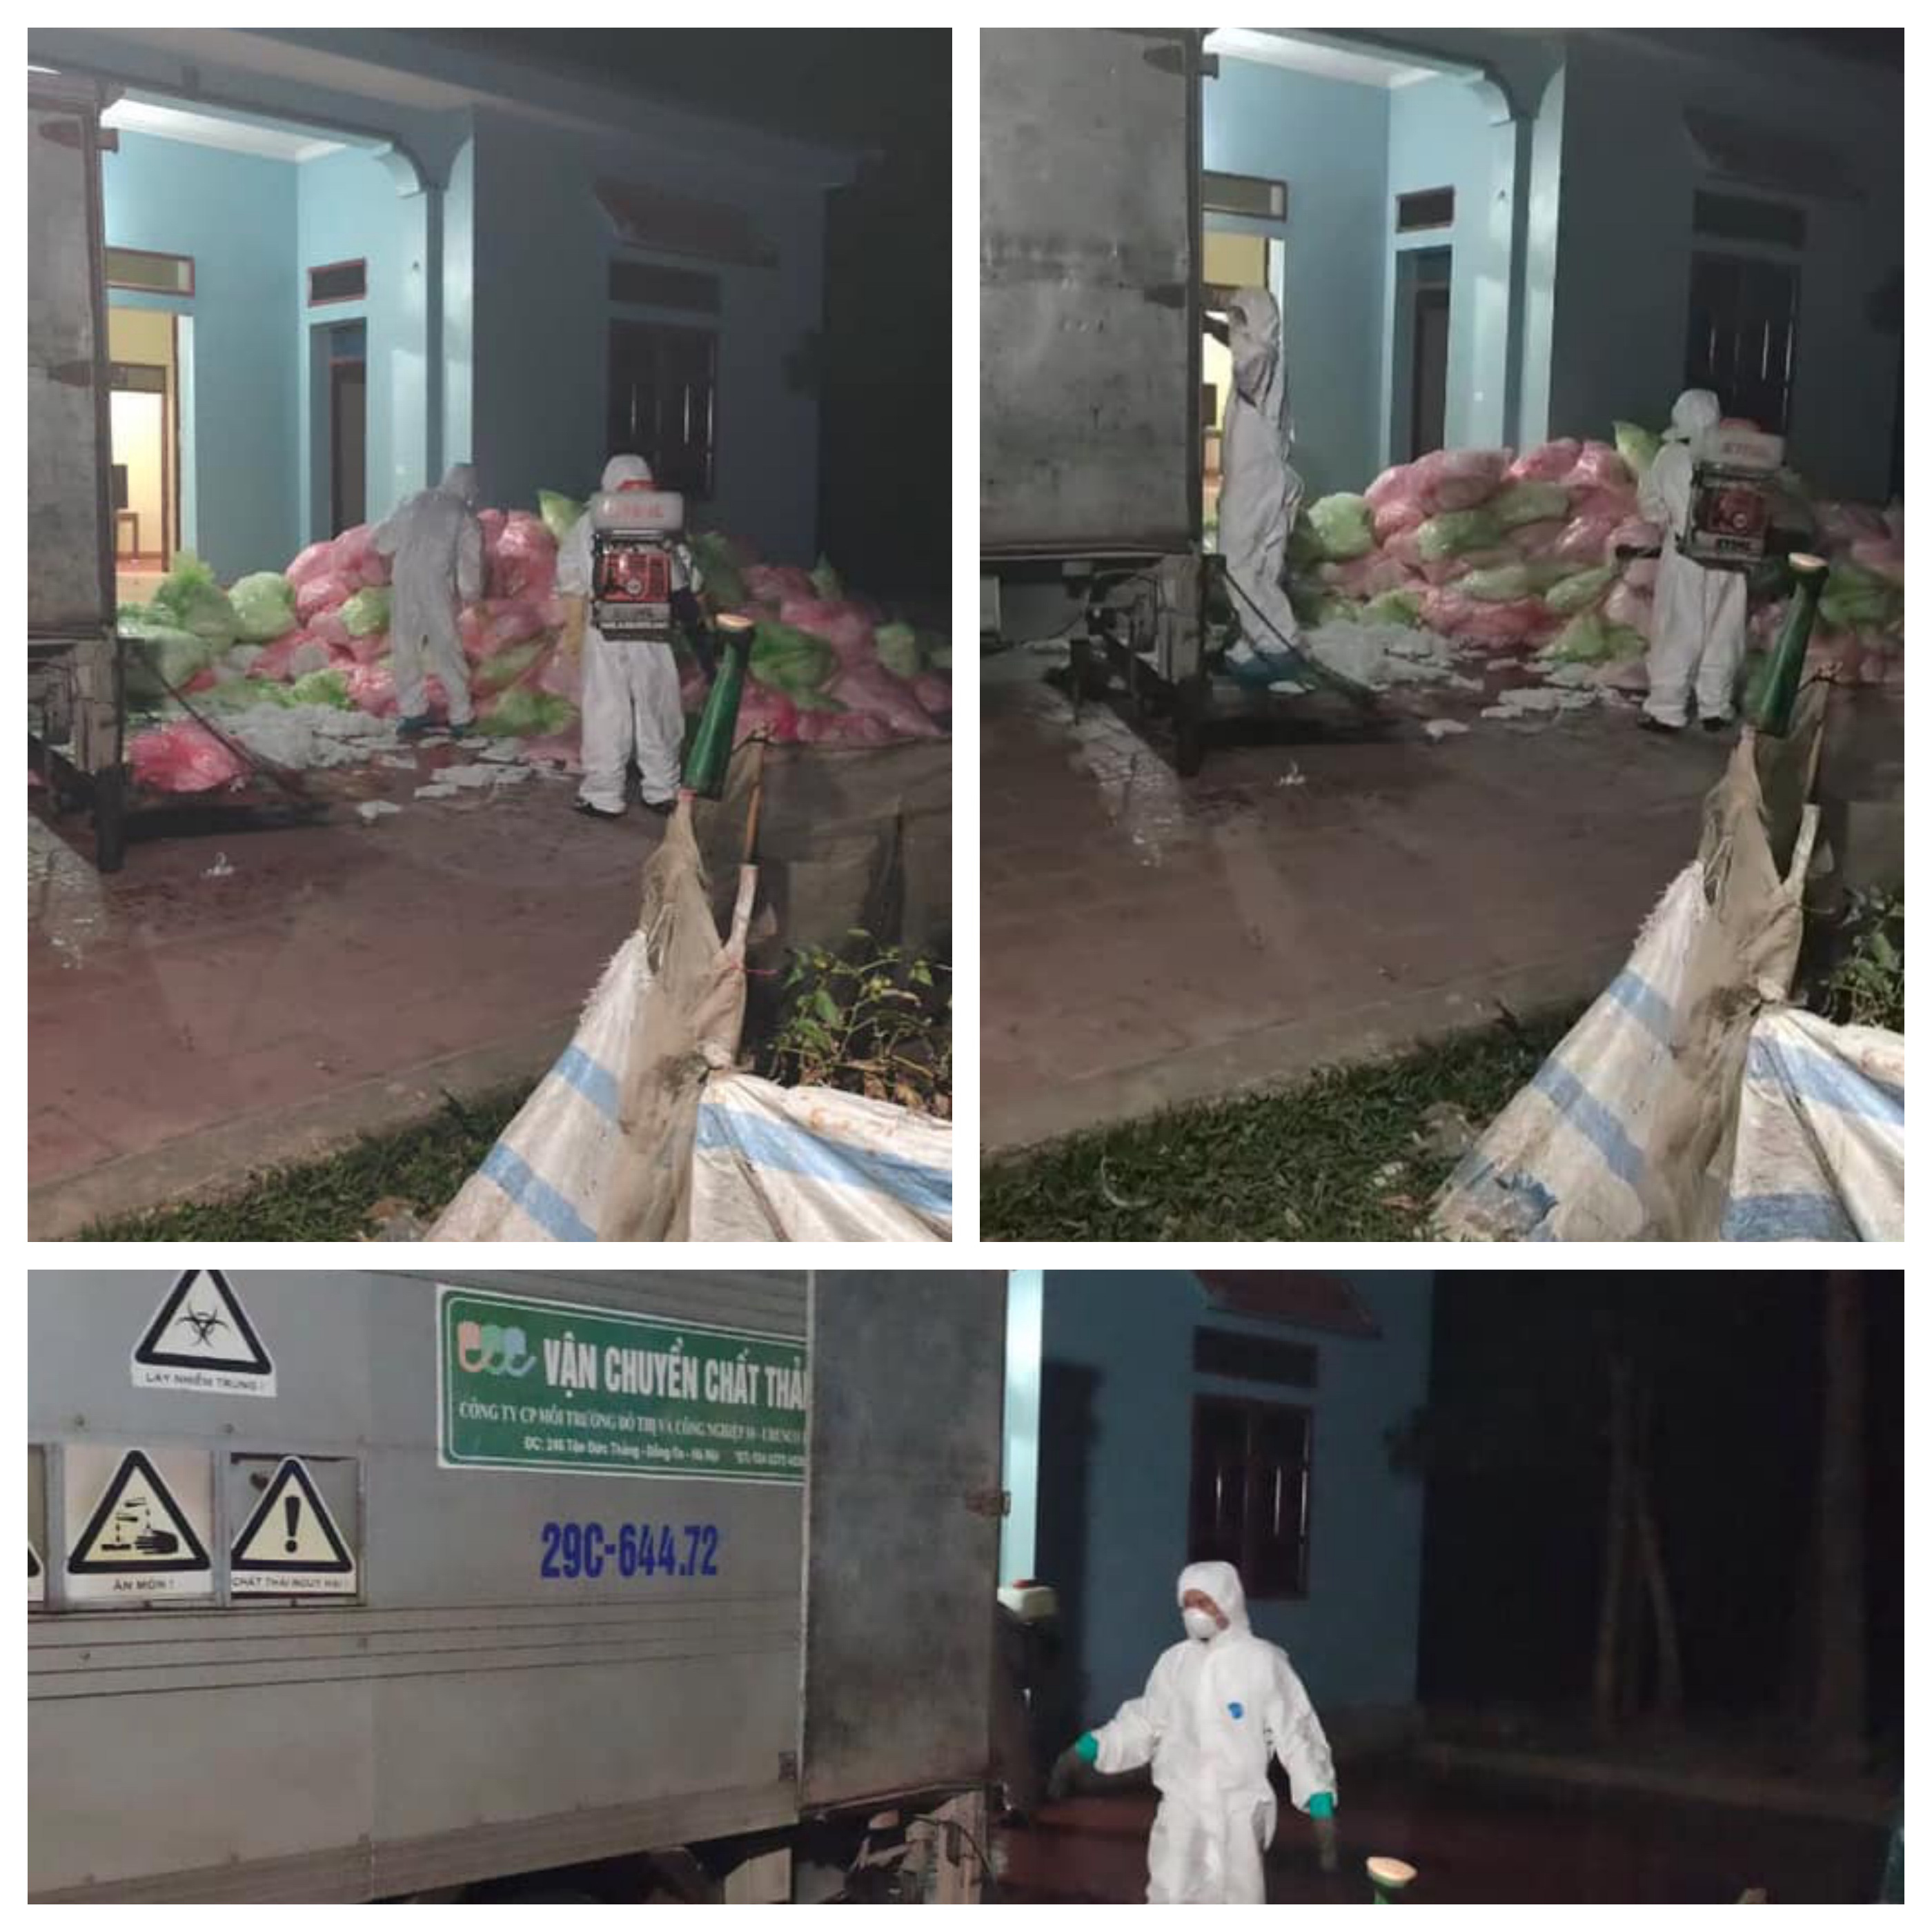 600 kg khẩu trang đã sử dụng được cất giấu trong ngôi nhà ở Hà Nội, cảnh sát đang làm rõ ý đồ kì lạ này - Ảnh 1.